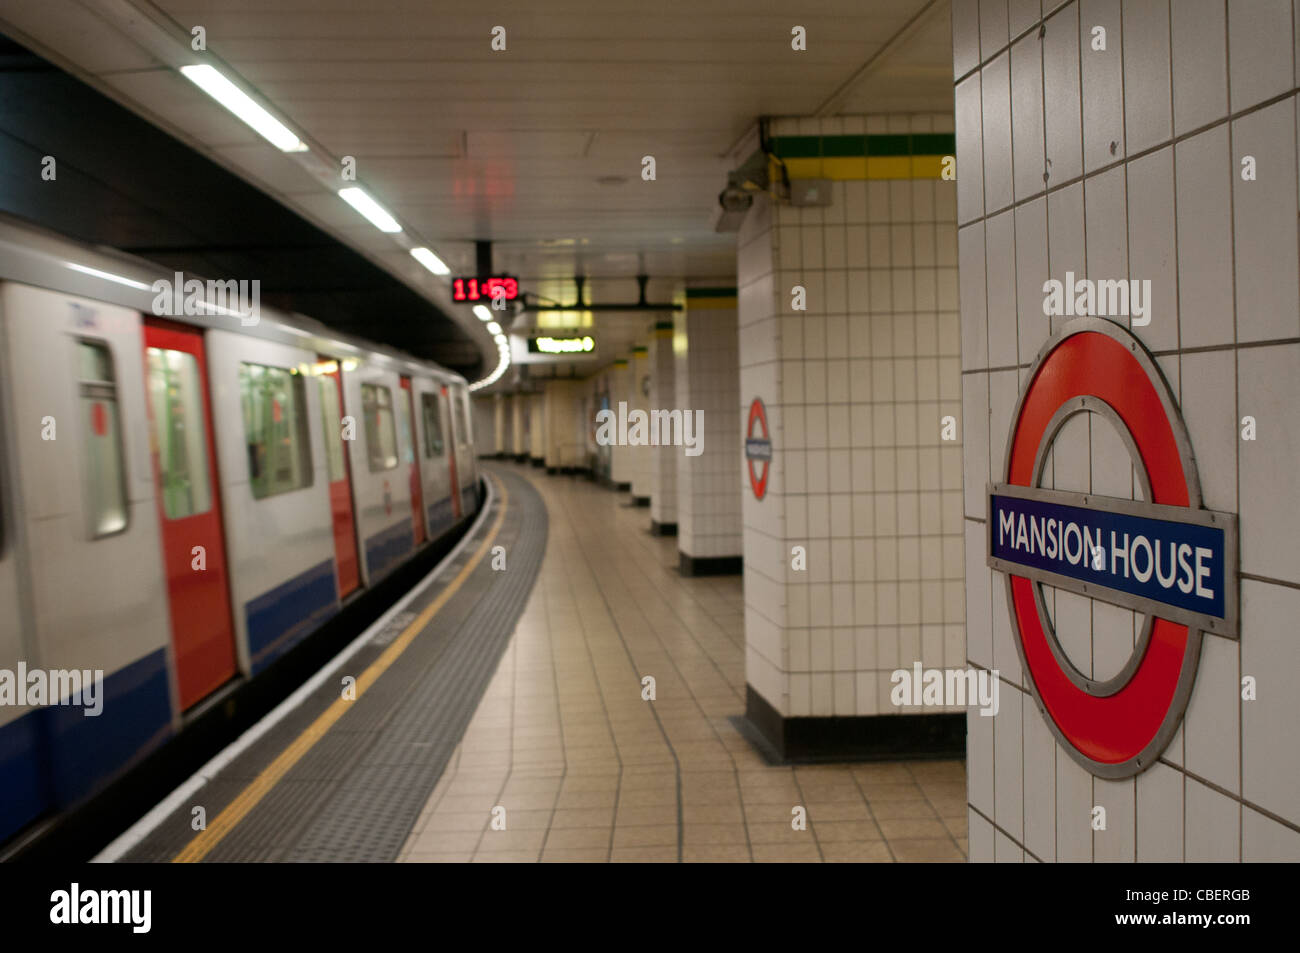 Mansion House Underground Station, London, England, UK Stock Photo